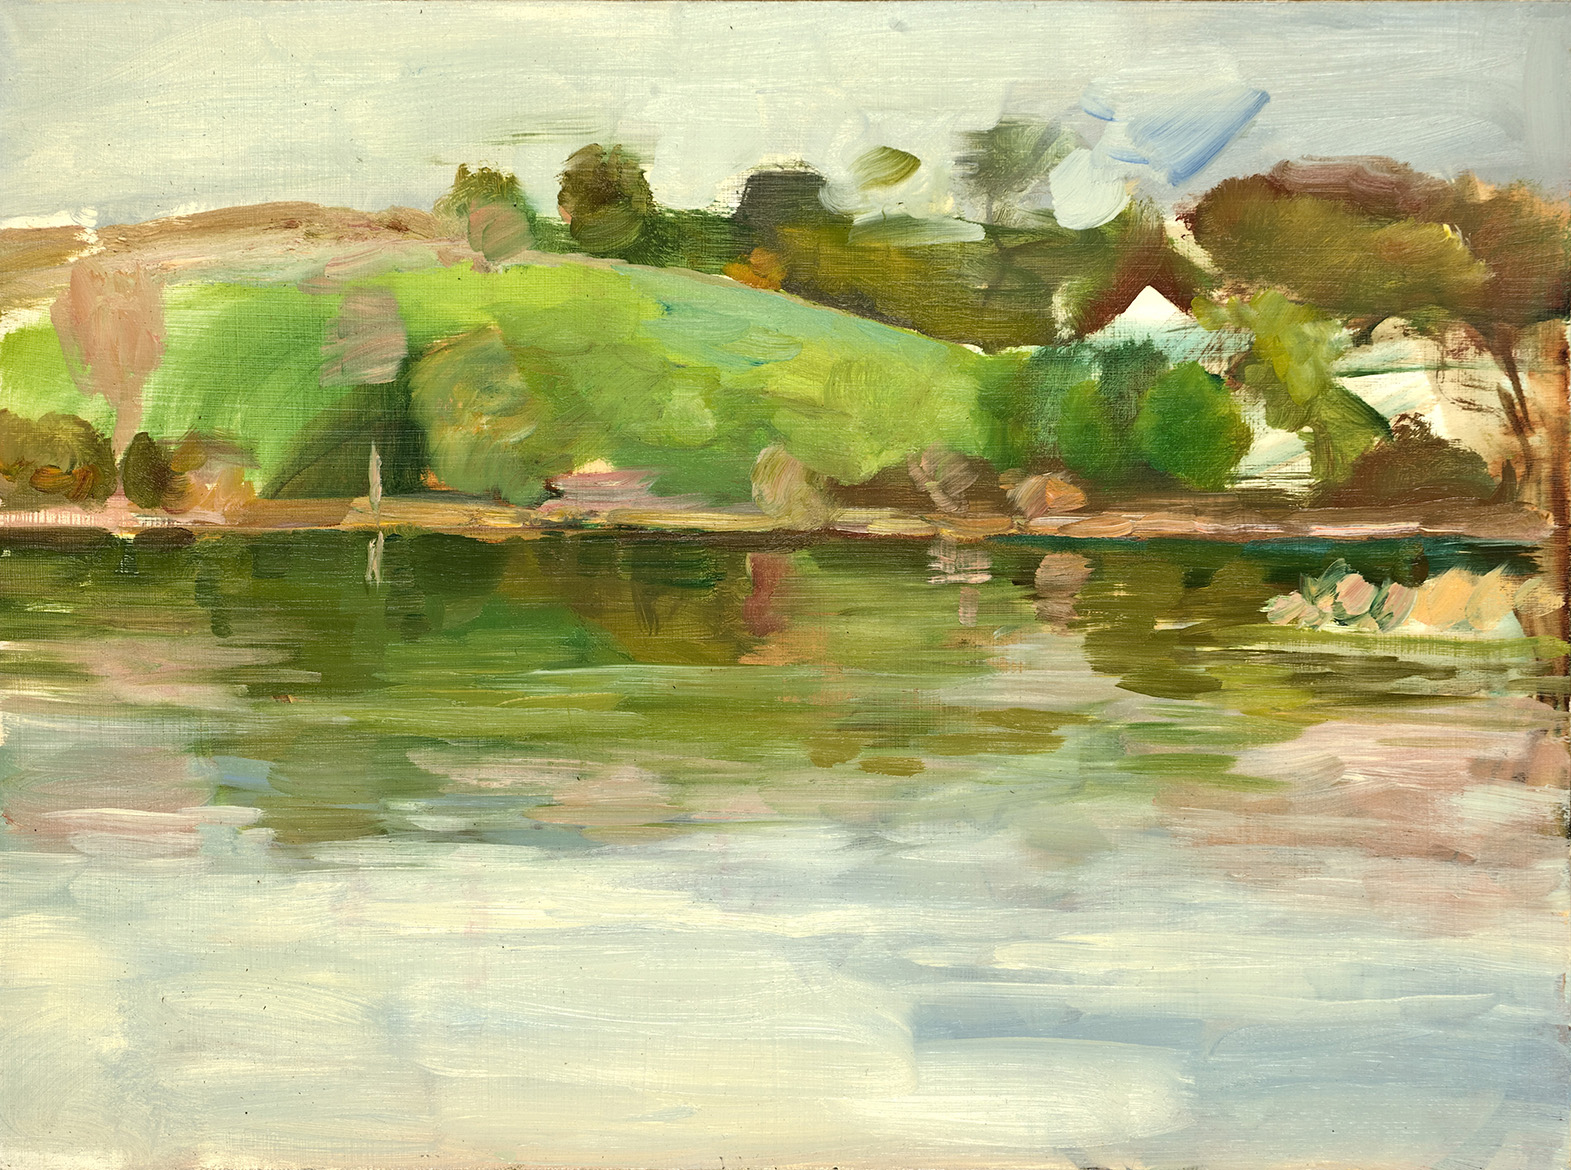  Spring River; oil on board, 12 x 16